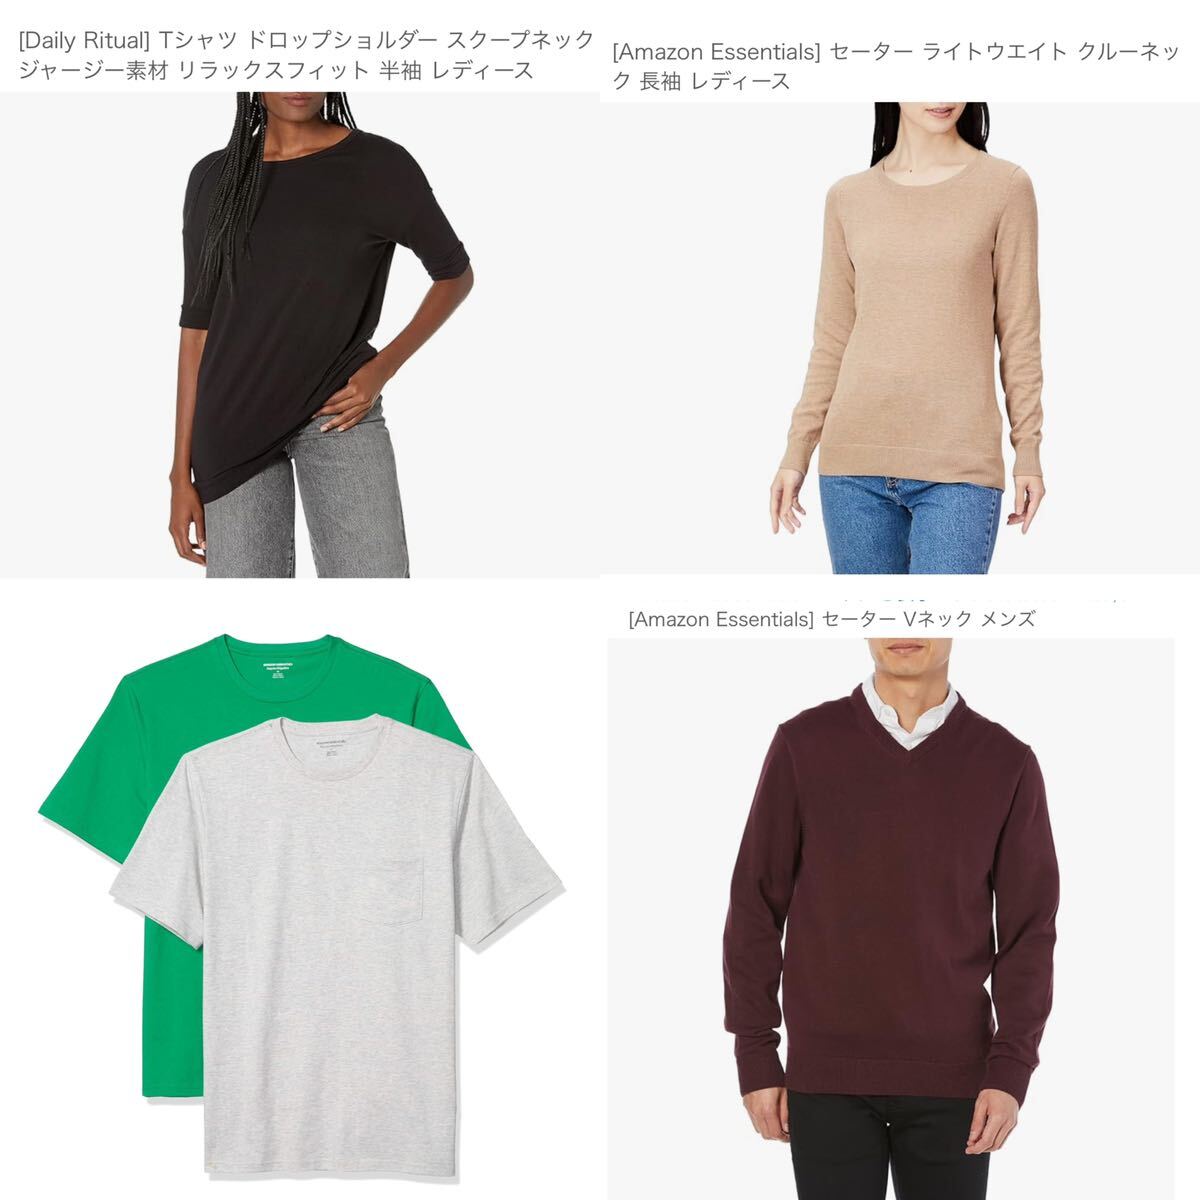 【新品】洋服 まとめ売り Amazon essentials レディース セーター Tシャツ メンズ シャツ ボトムス 53枚 セット 162の画像6